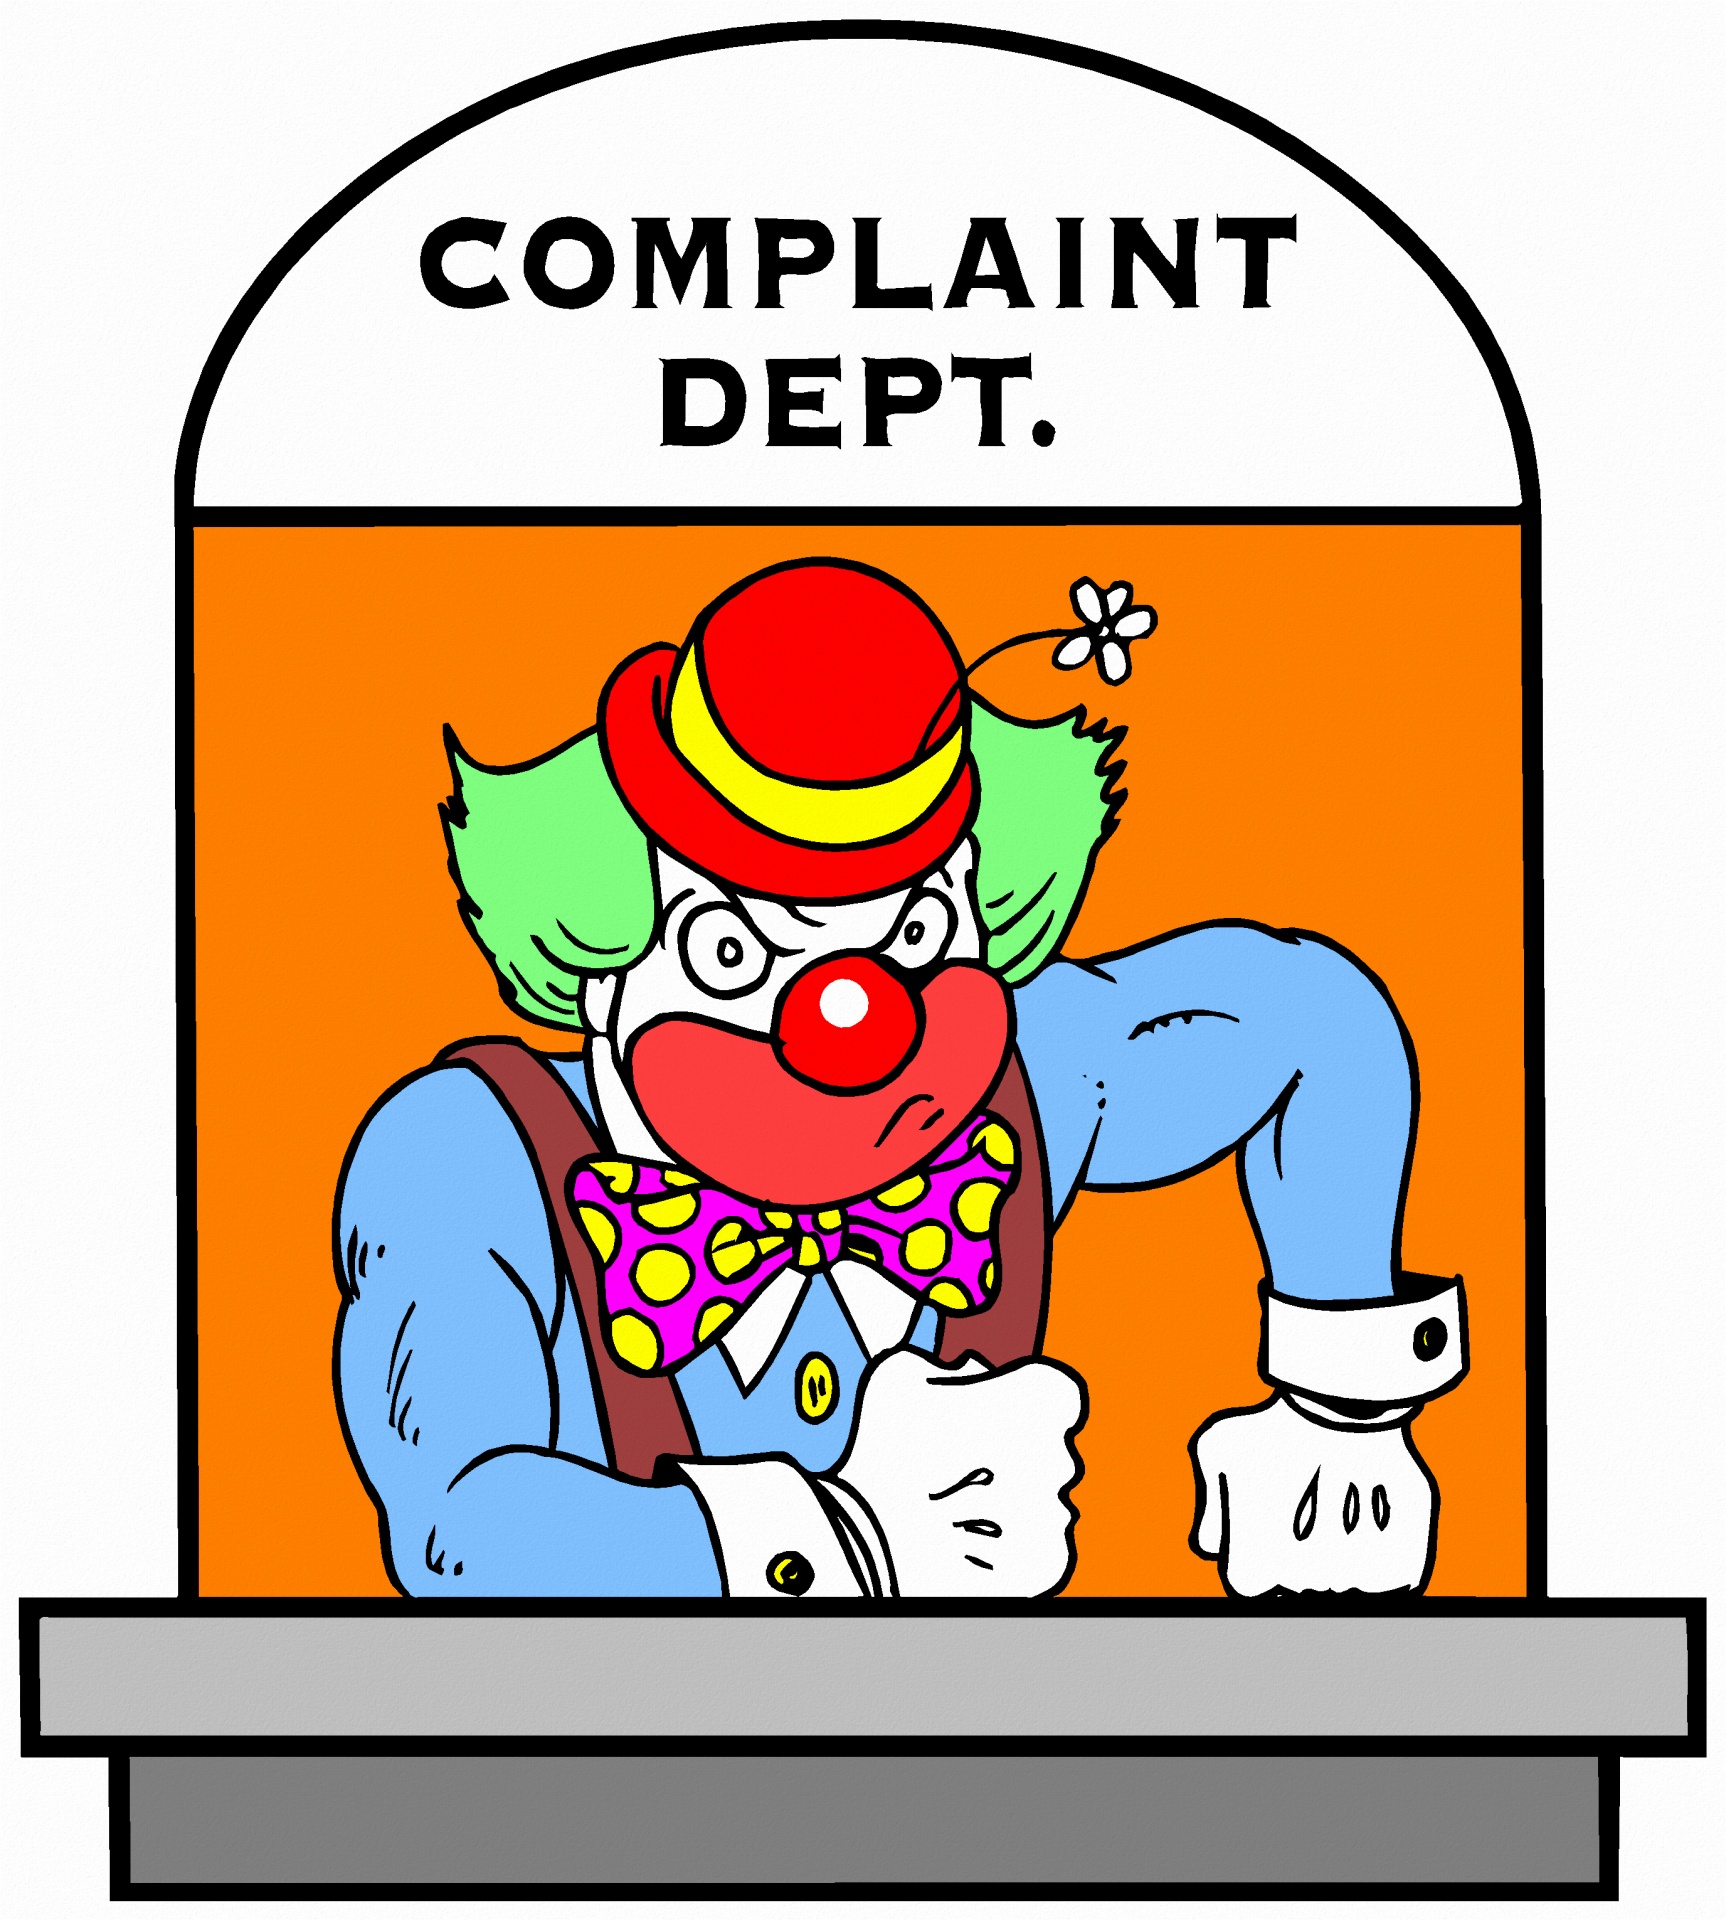 Complaints - The Clown